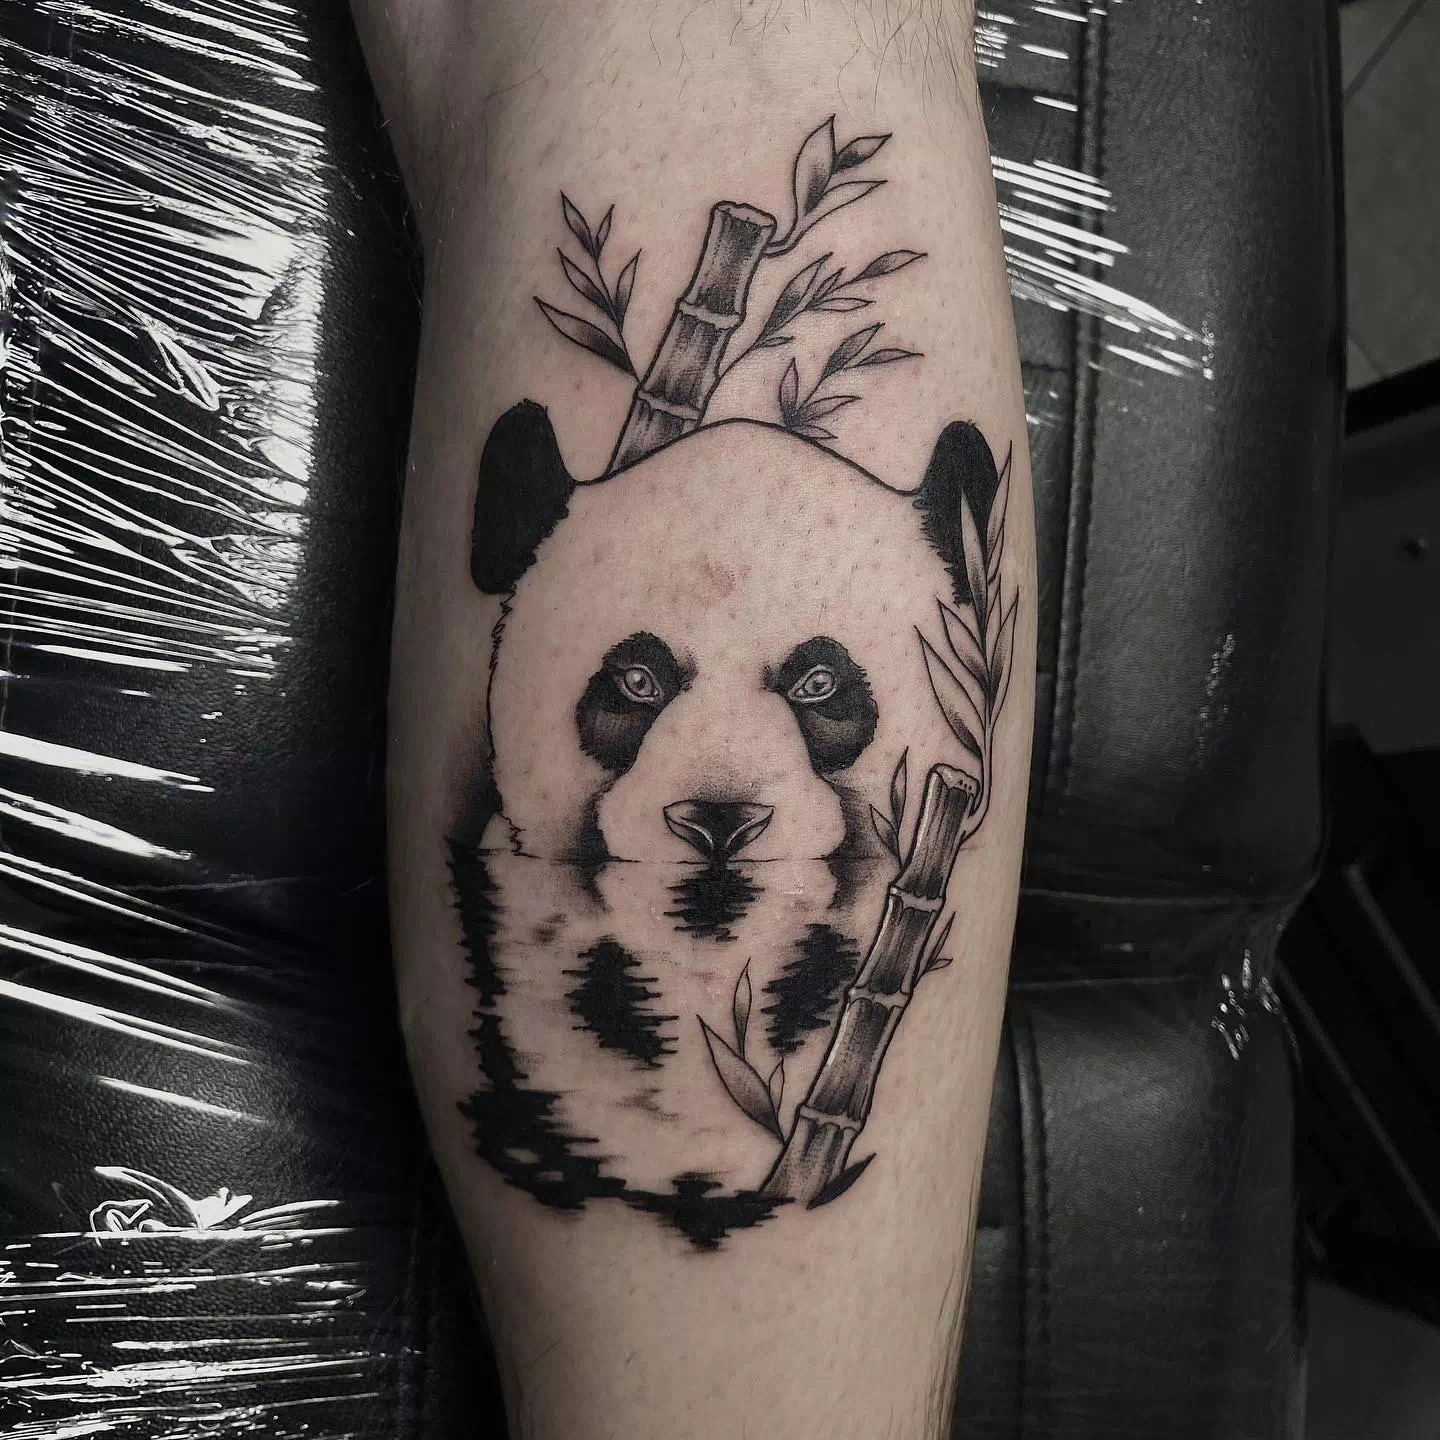 Panda tattoo ideas 15